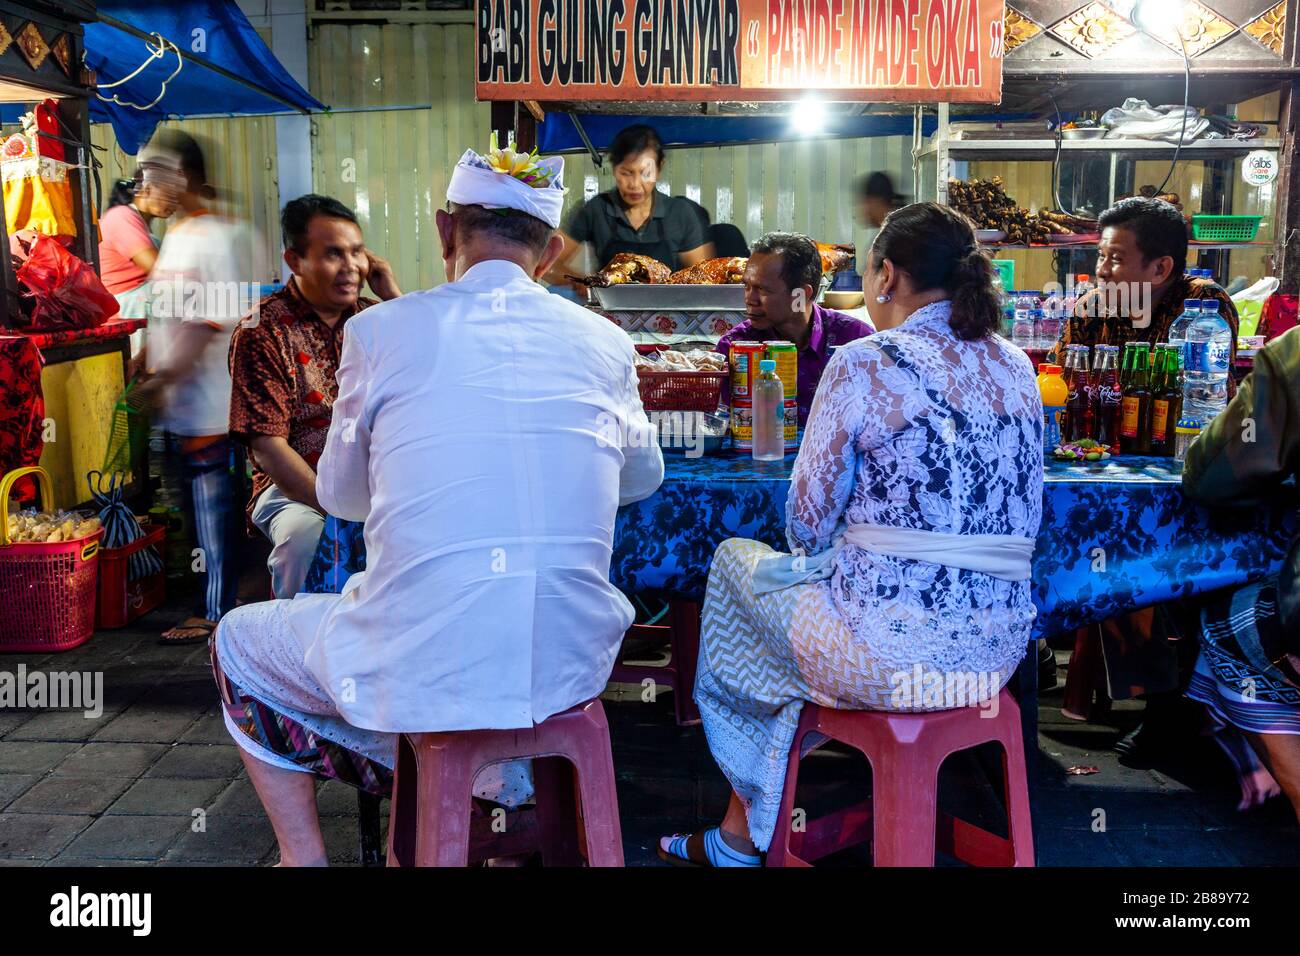 Persone balinesi che mangiano cibo di strada al mercato Notturno di Gianyar, Bali, Indonesia. Foto Stock